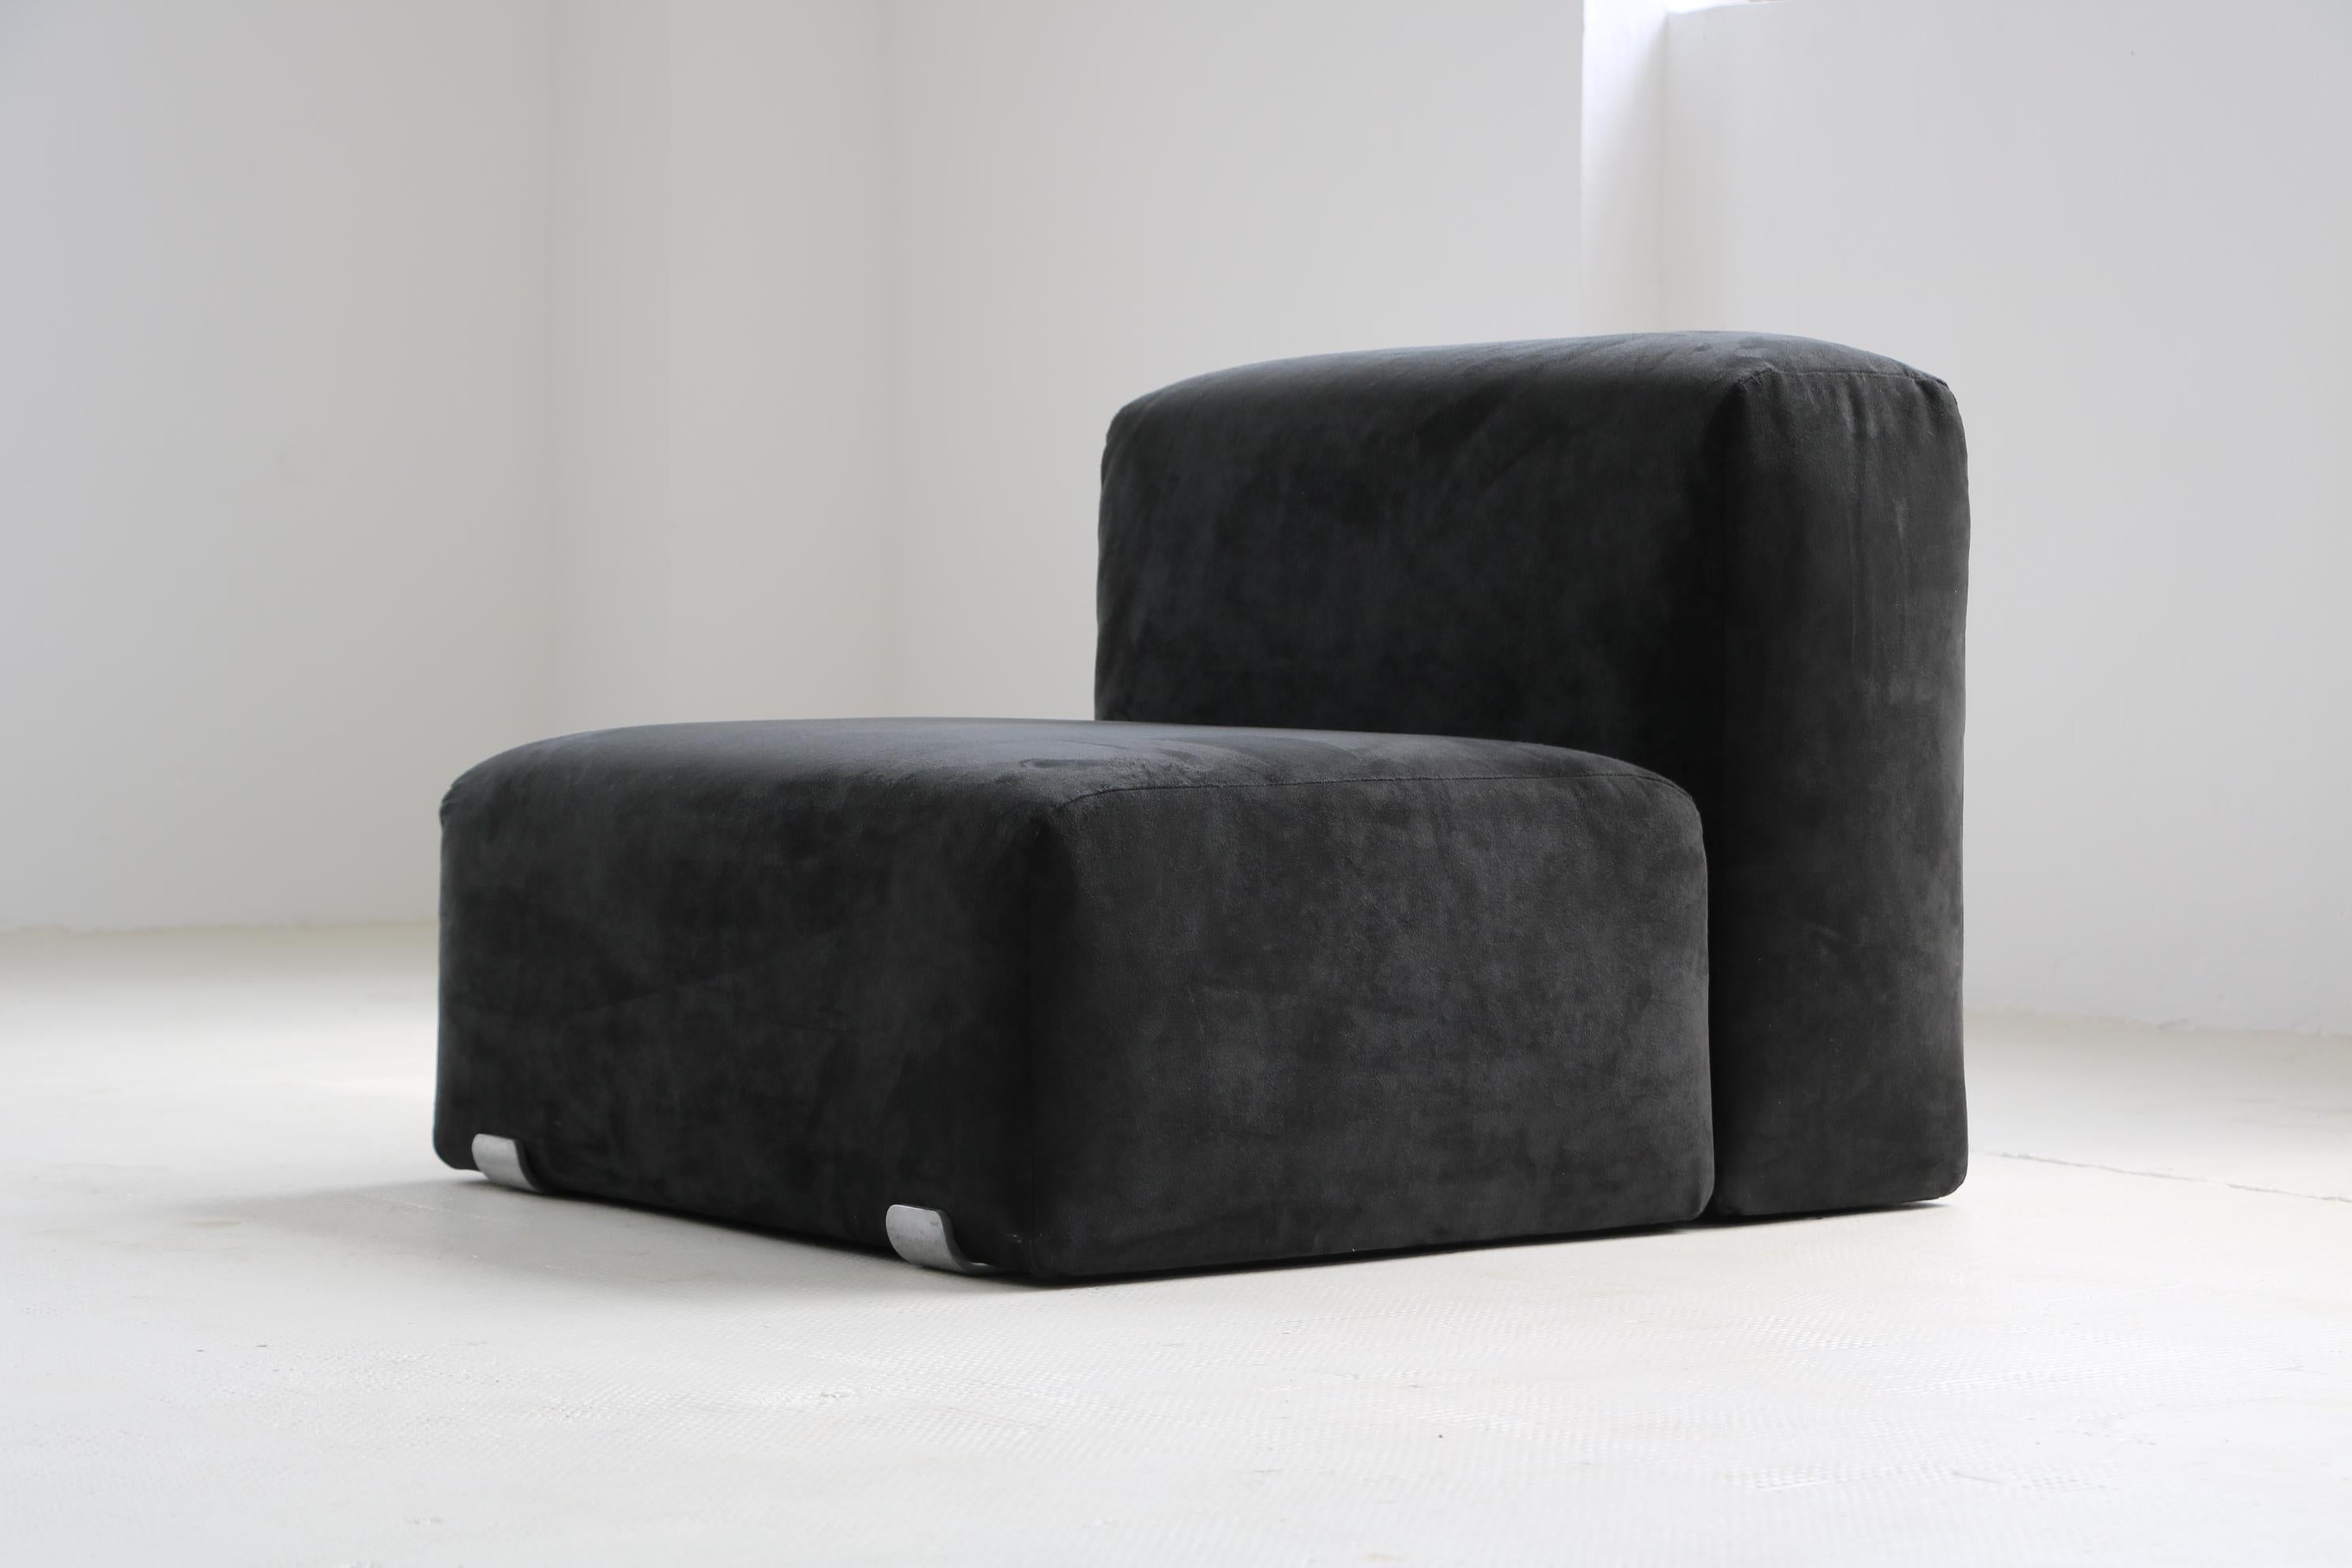 Kazuhide Takahama Stuhl, hergestellt von Gavina im Jahr 1980.
Der Preis gilt für den Stuhl. Sie werden das Sofa in einer anderen Auktion finden.
Gepolstertes Gehäuse, Bezug Wildleder schwarz, Modell 'Marcel'.